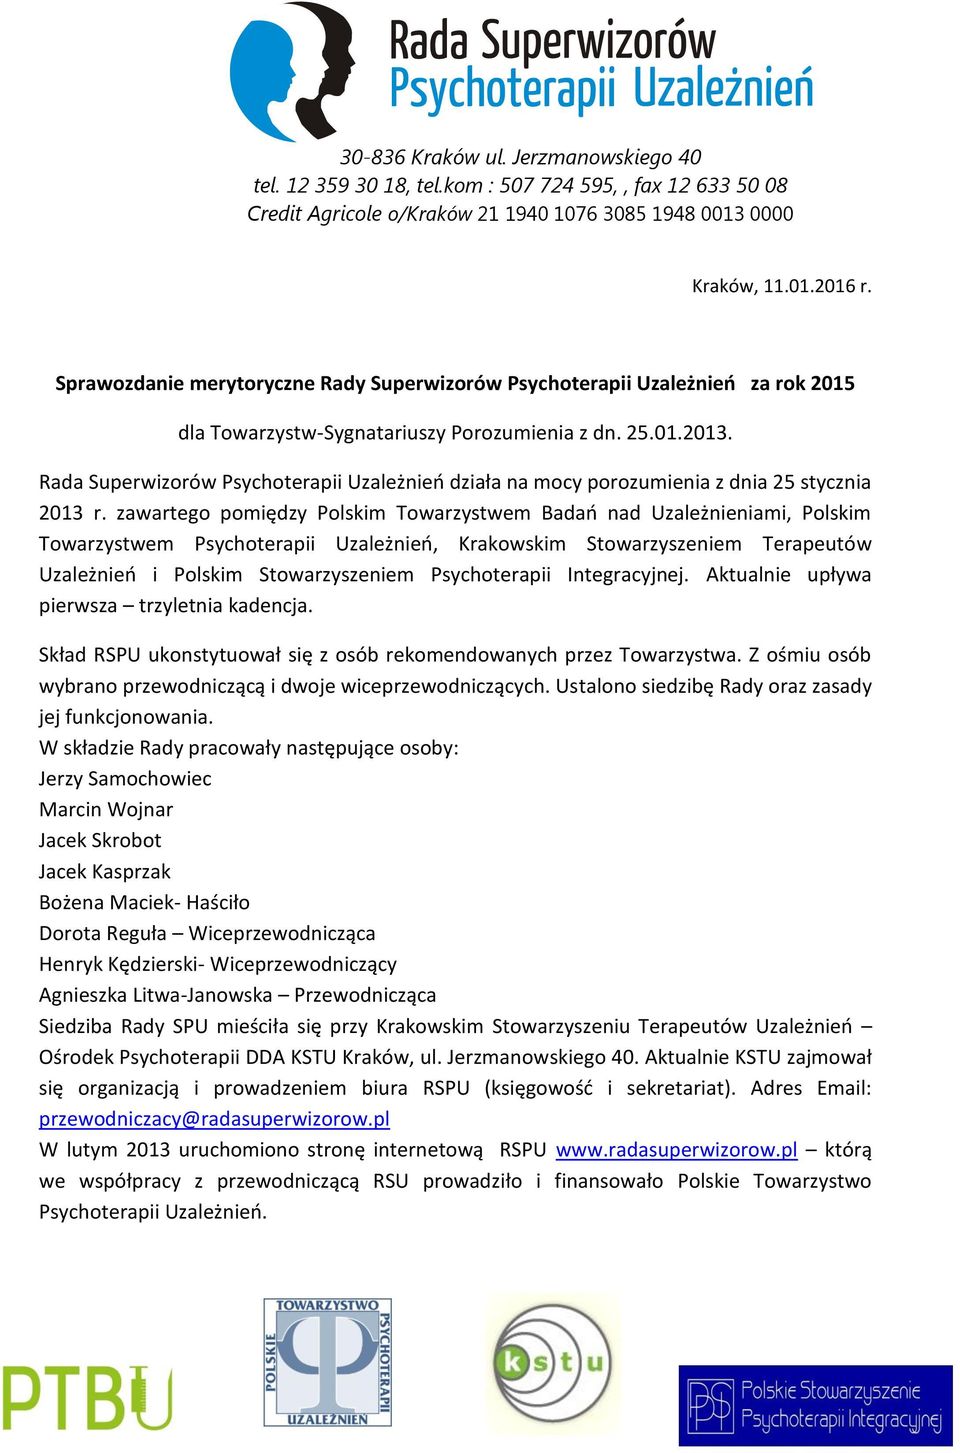 zawartego pomiędzy Polskim Towarzystwem Badań nad Uzależnieniami, Polskim Towarzystwem Psychoterapii Uzależnień, Krakowskim Stowarzyszeniem Terapeutów Uzależnień i Polskim Stowarzyszeniem